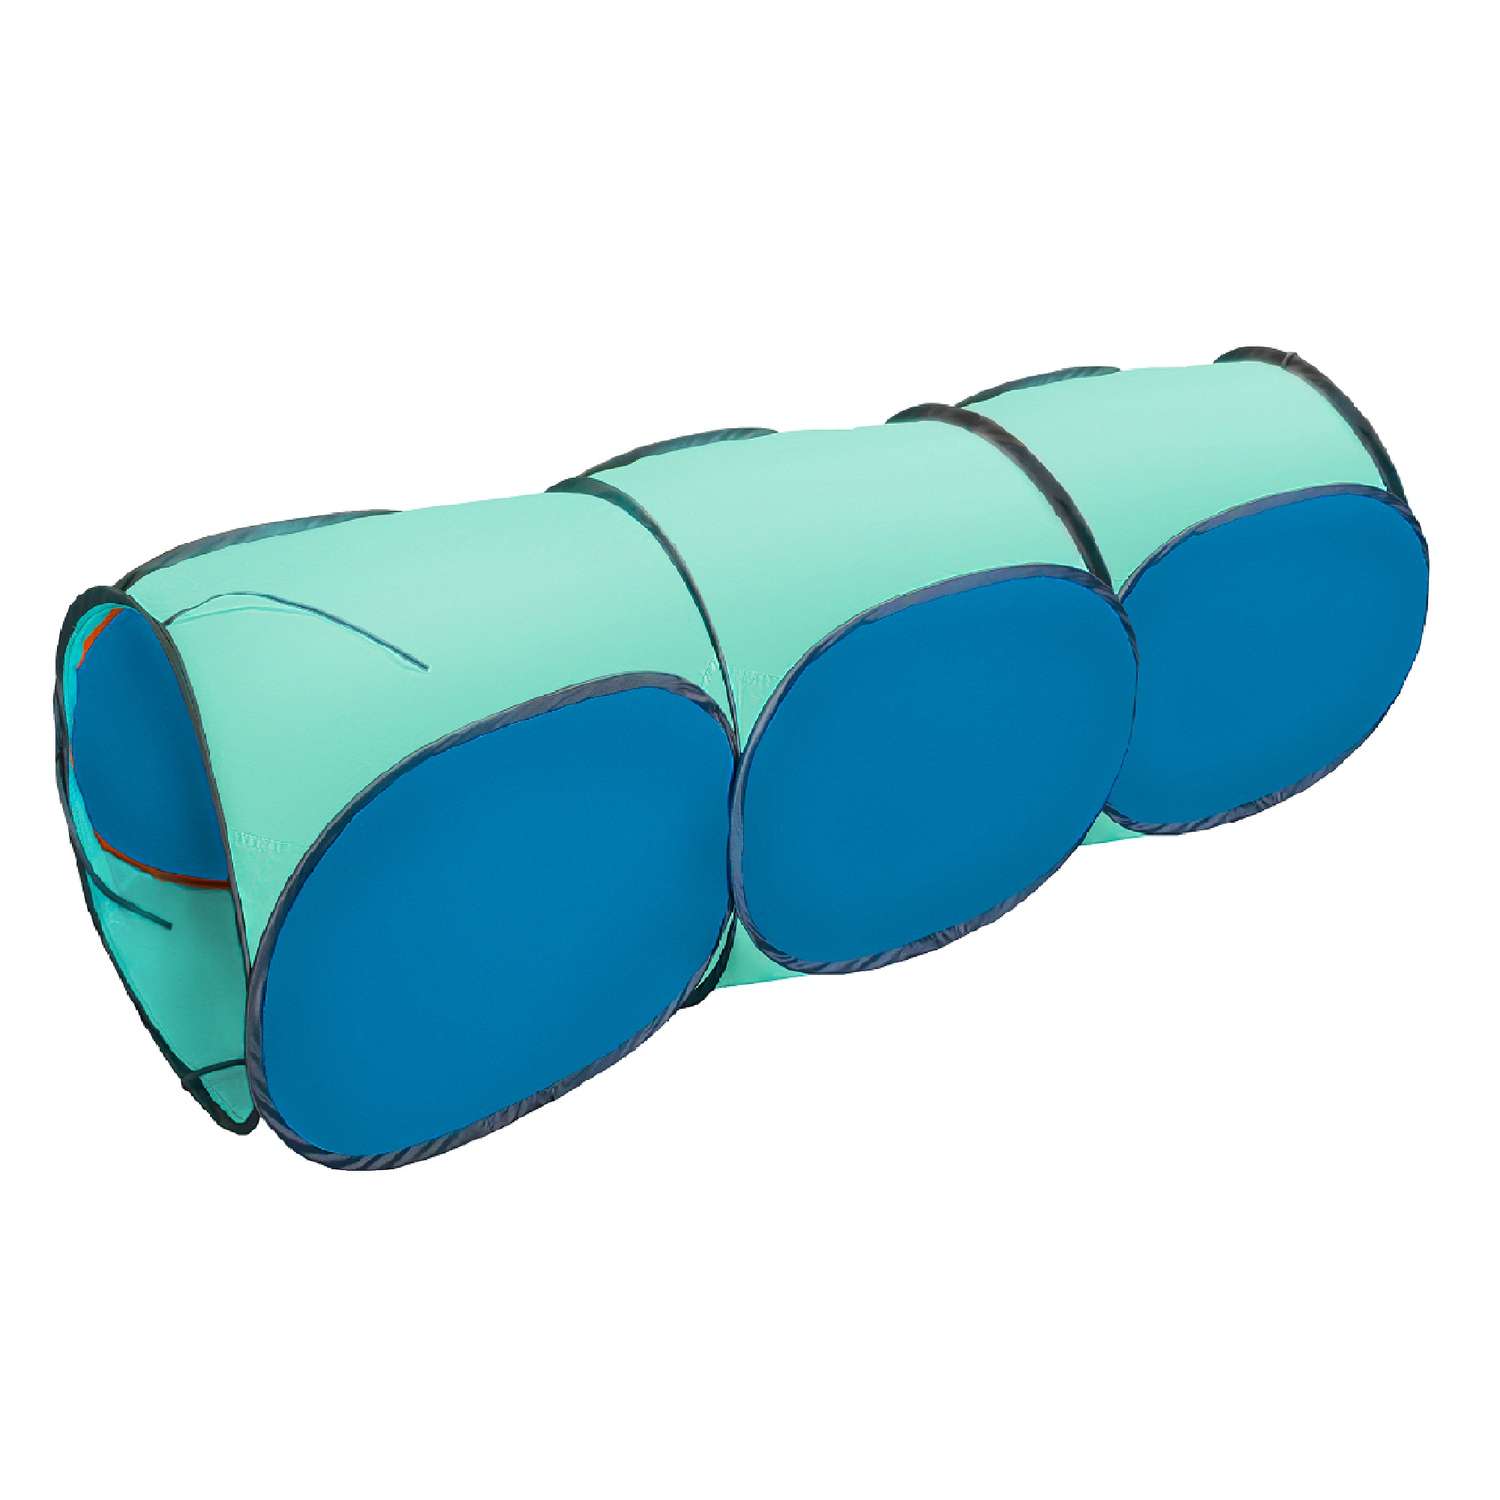 Тоннель для палатки Belon familia трёхсекционный цвет голубой бирюзовый - фото 1